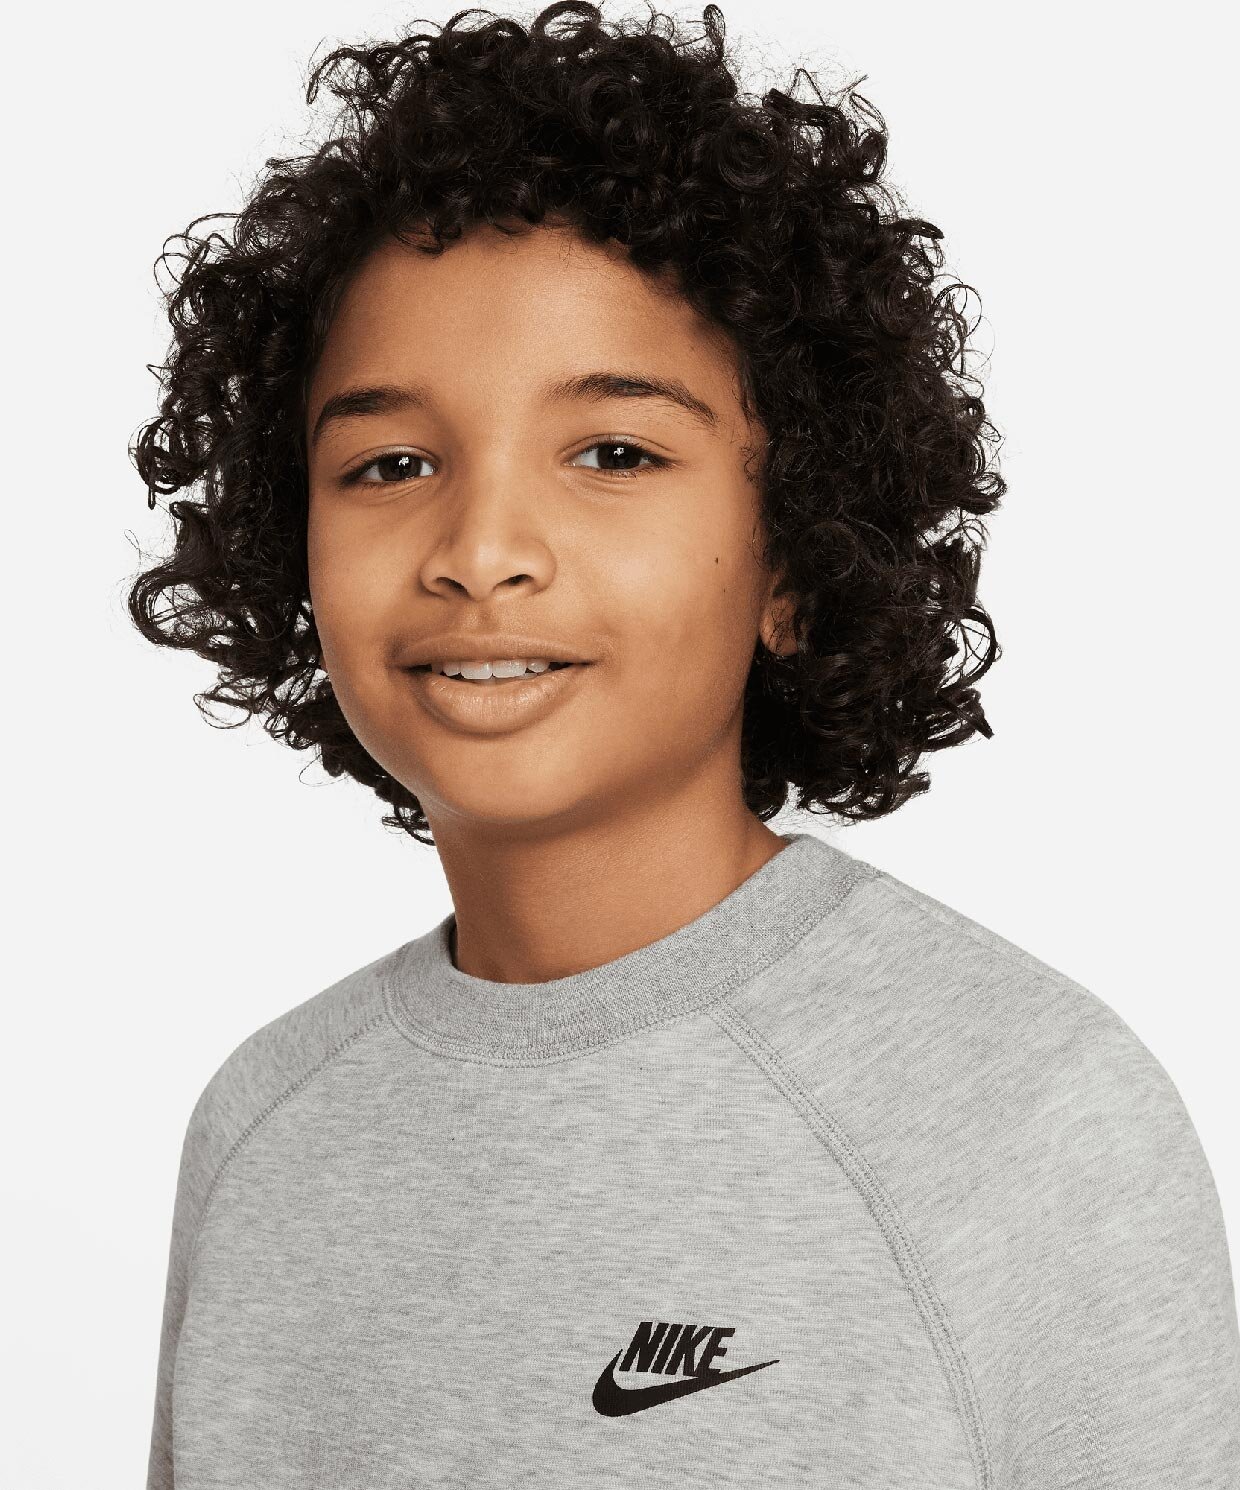 resm Nike Tech Fleece Sweatshirt